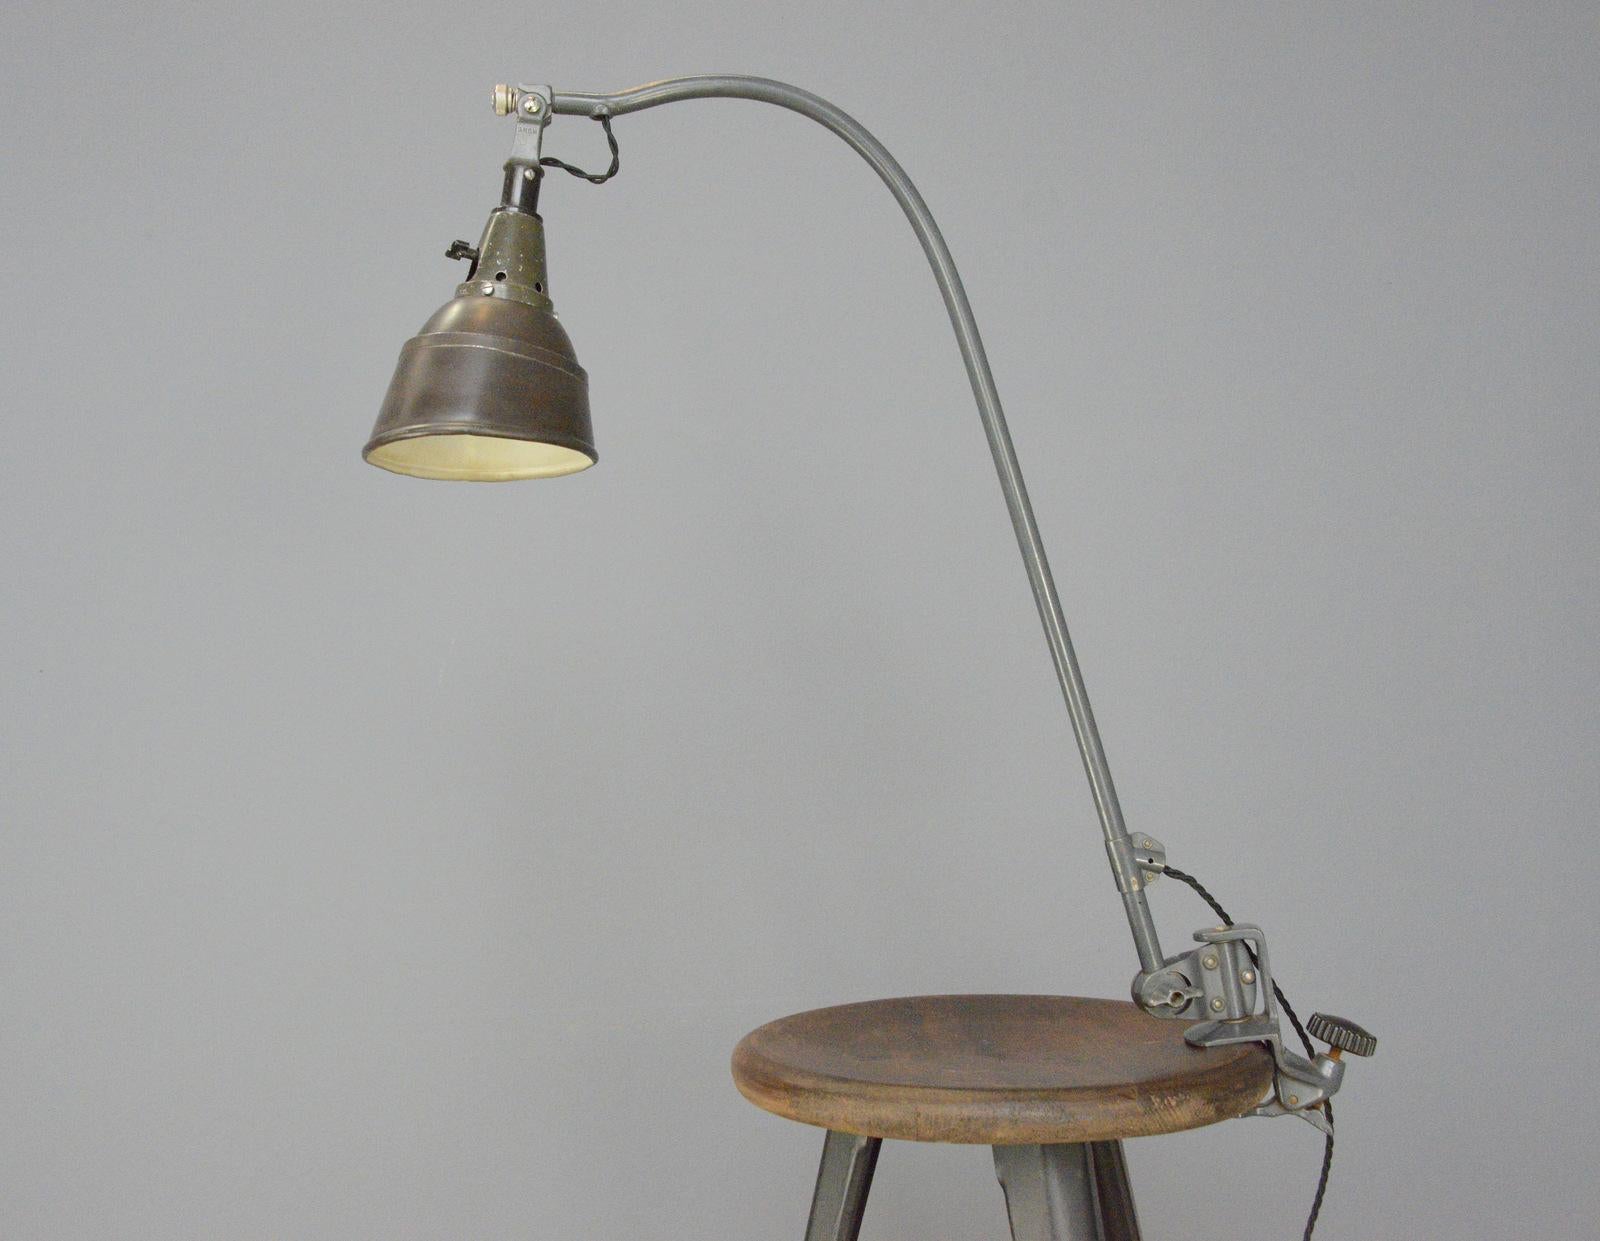 Lampe de bureau typique Peitsche 113 de Curt Fischer pour Midgard, datant des années 1940

- Bras réglable incurvé avec sa peinture grise d'origine
- Abat-jour angulaire en acier avec peinture brune d'origine.
- Convient aux ampoules de type E27
-